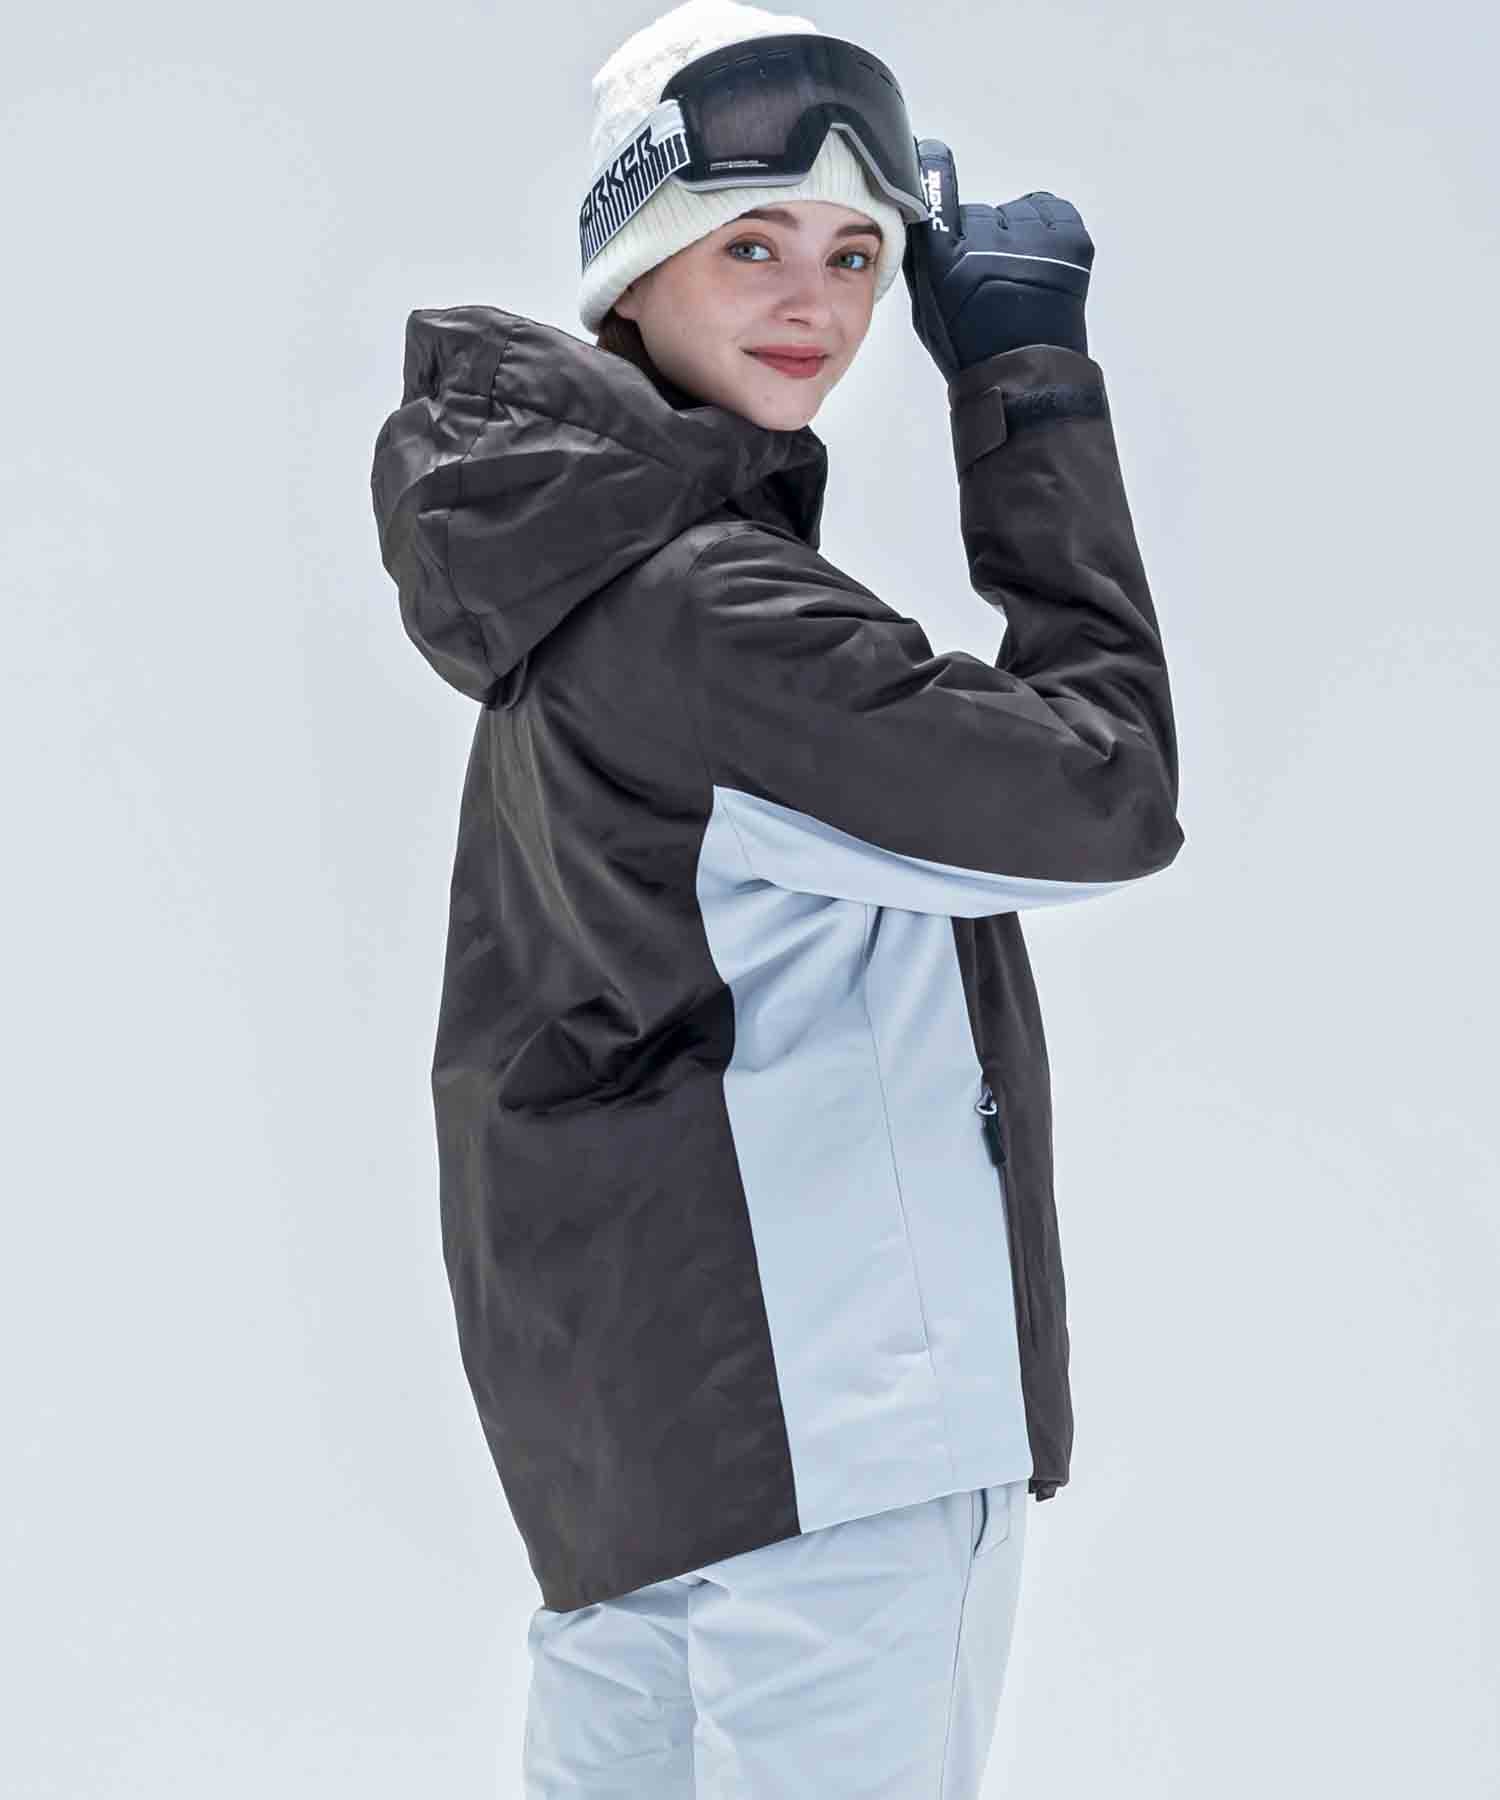 【WOMENS】Phenix Camo Jaquard Ws Two-piece スキーウェア アウター ジャケットとパンツの上下セット ツーピース / JAPAN /phenixスキーウェア23AW新作